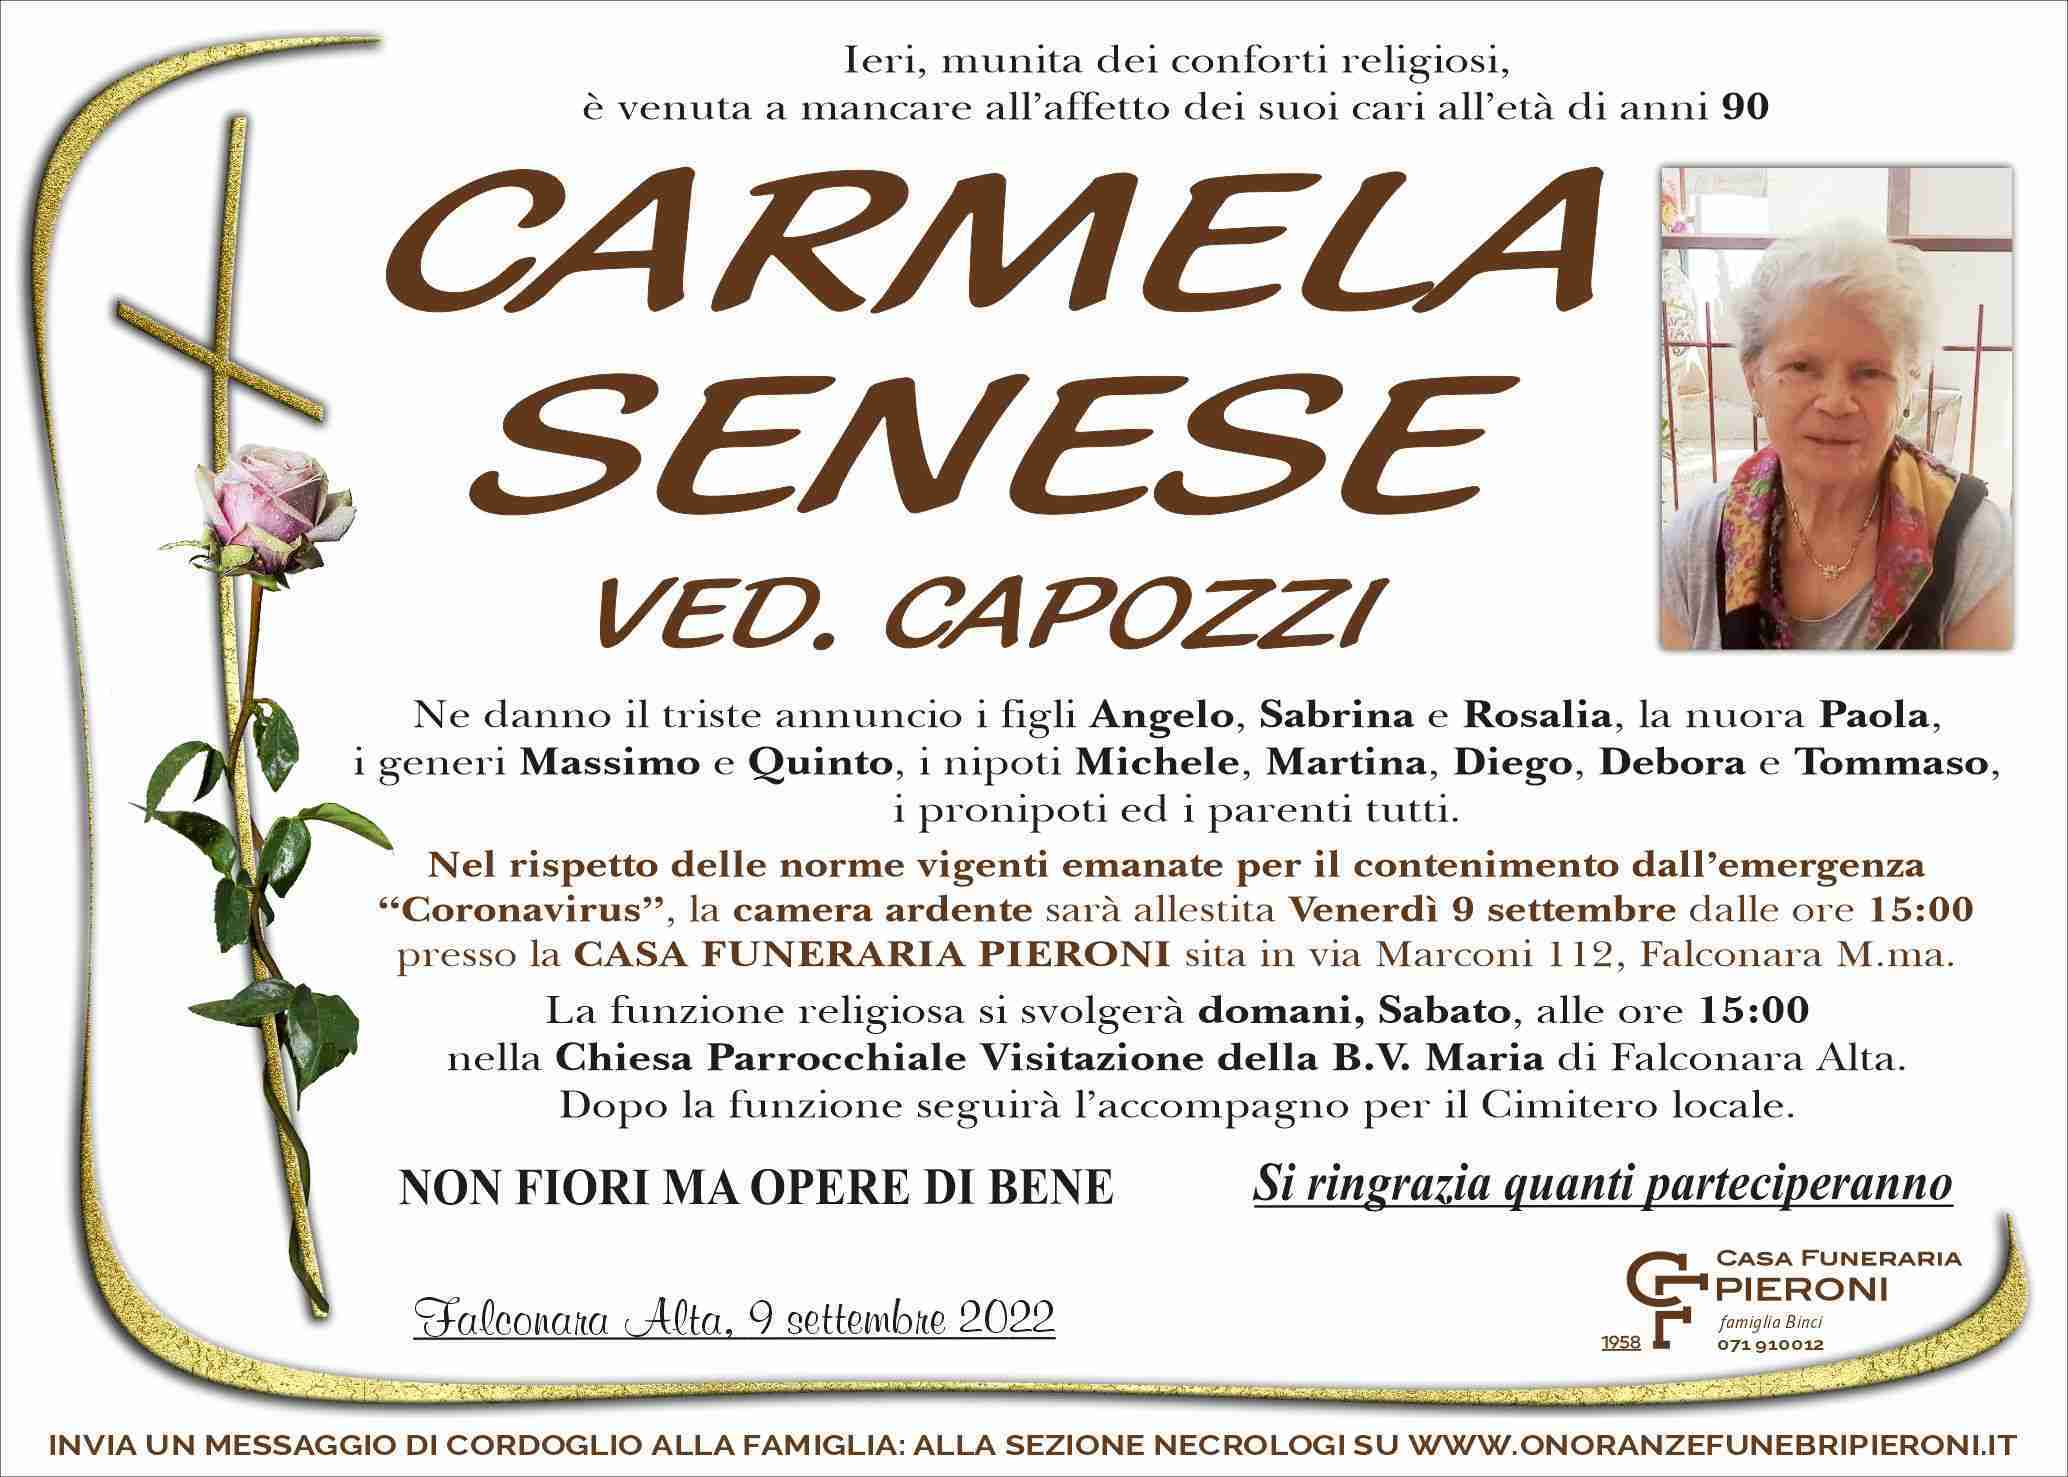 Carmela Senese